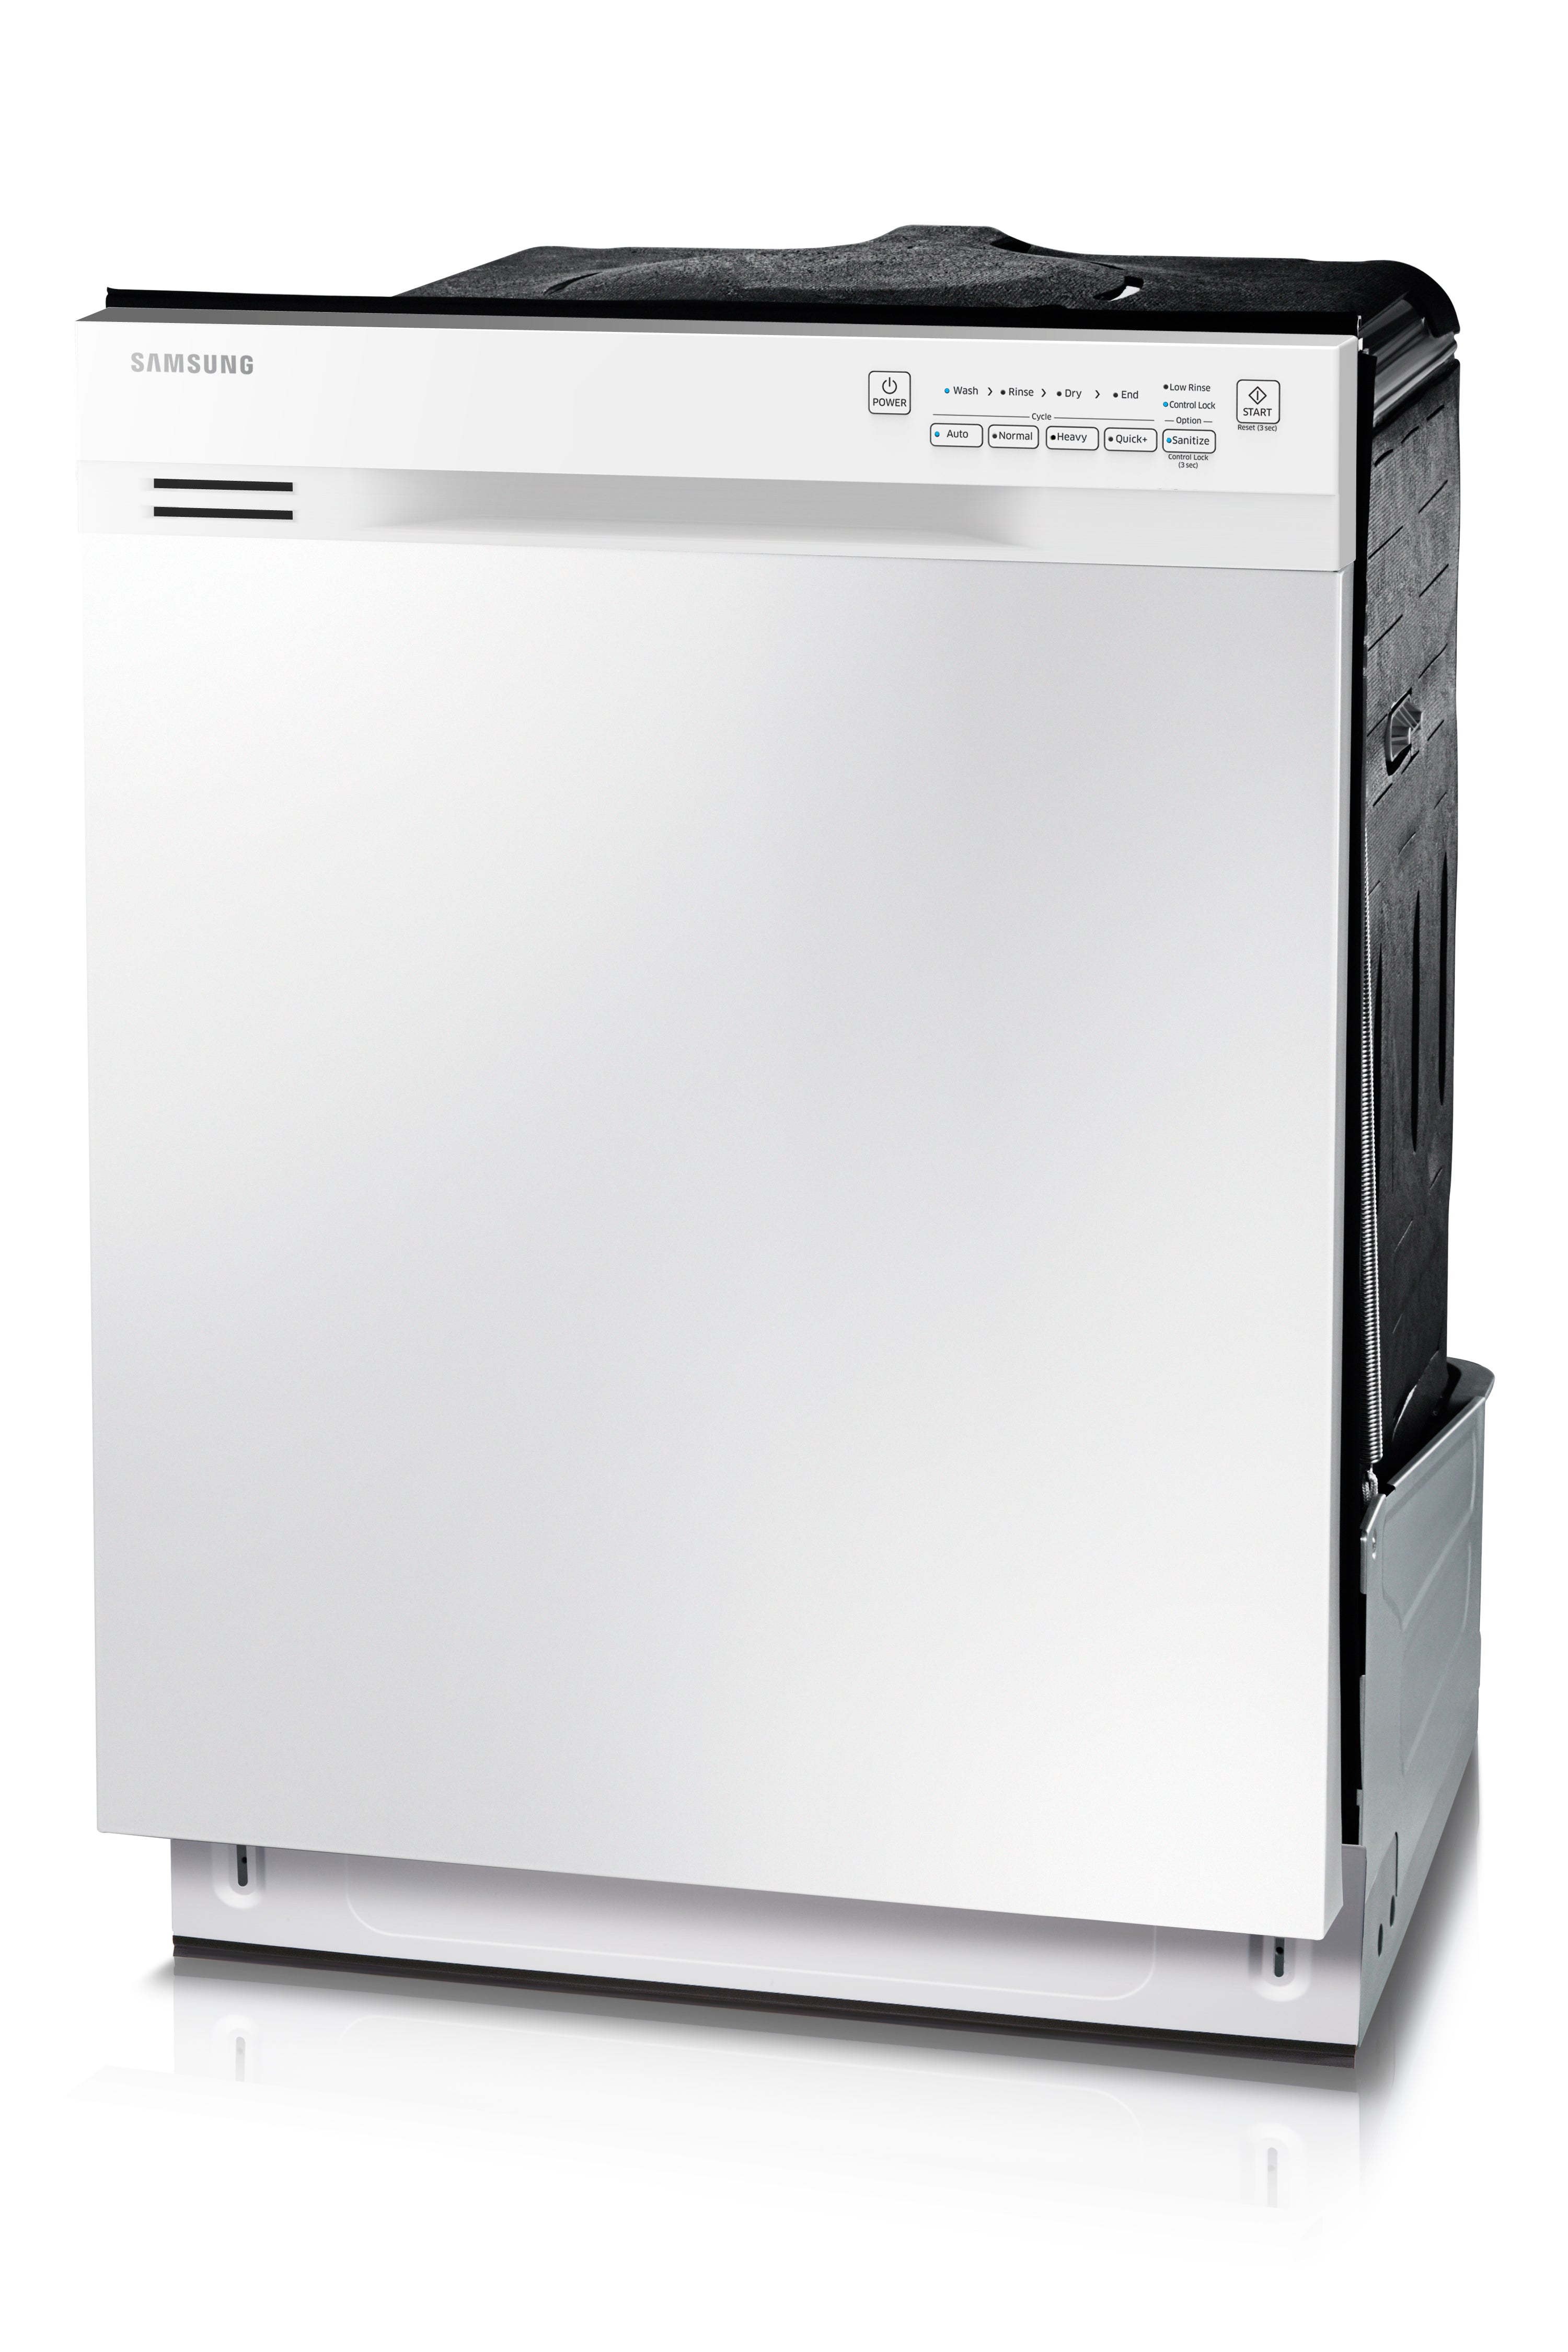 Samsung - 50 dBA Built In Dishwasher in White - DW80J3020UW